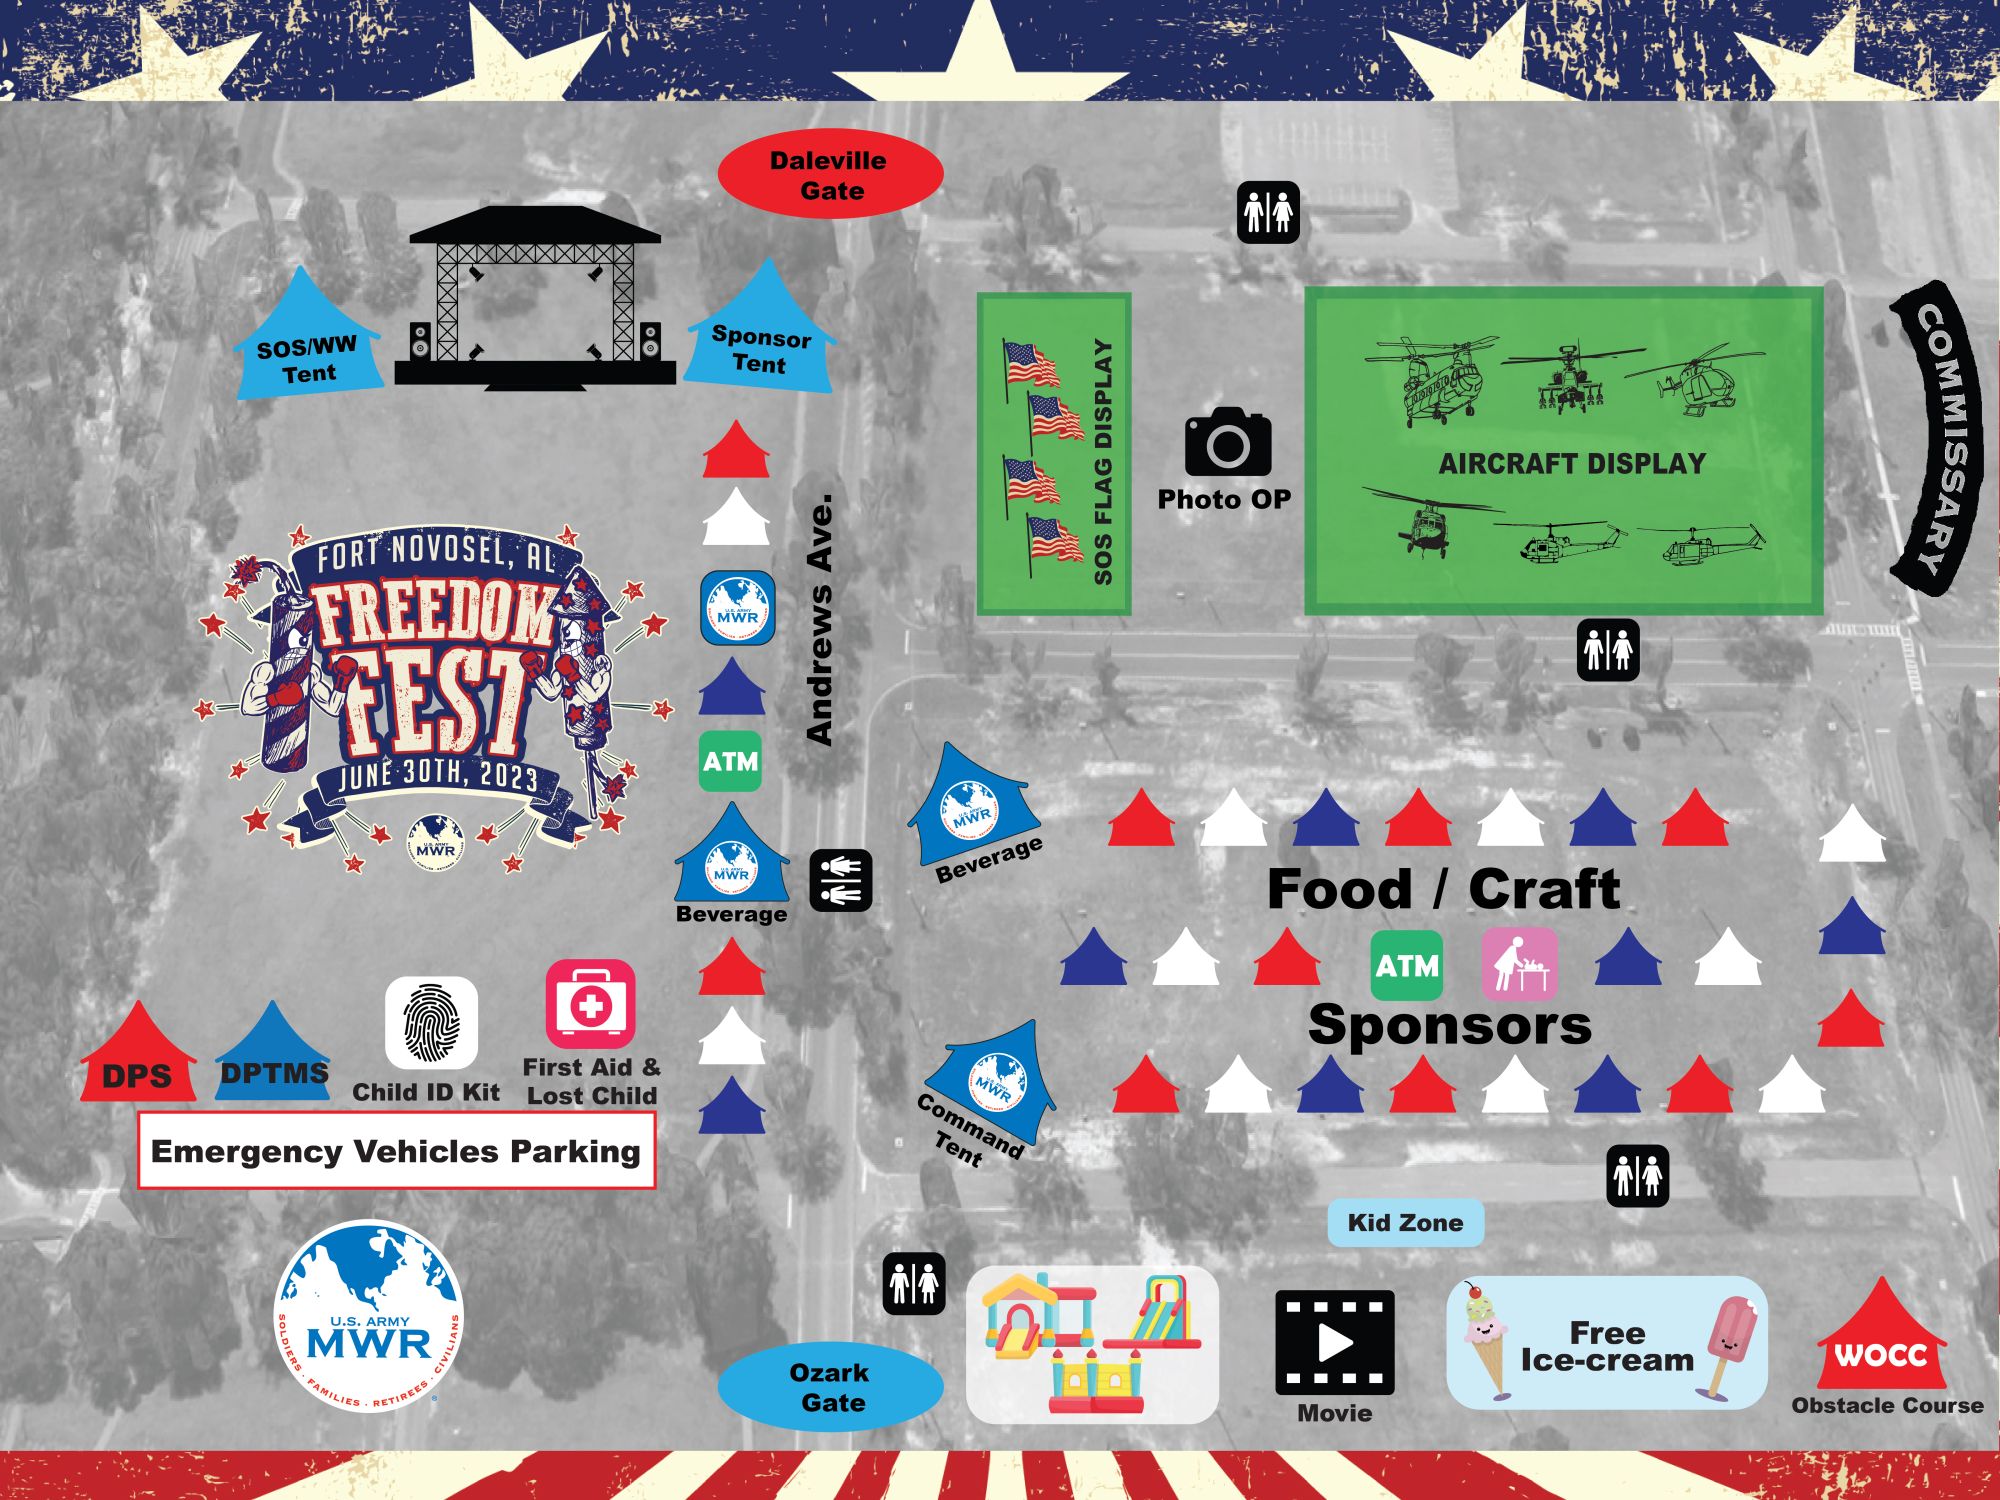 Freedom Fest 2023 Ft. Novosel US Army MWR